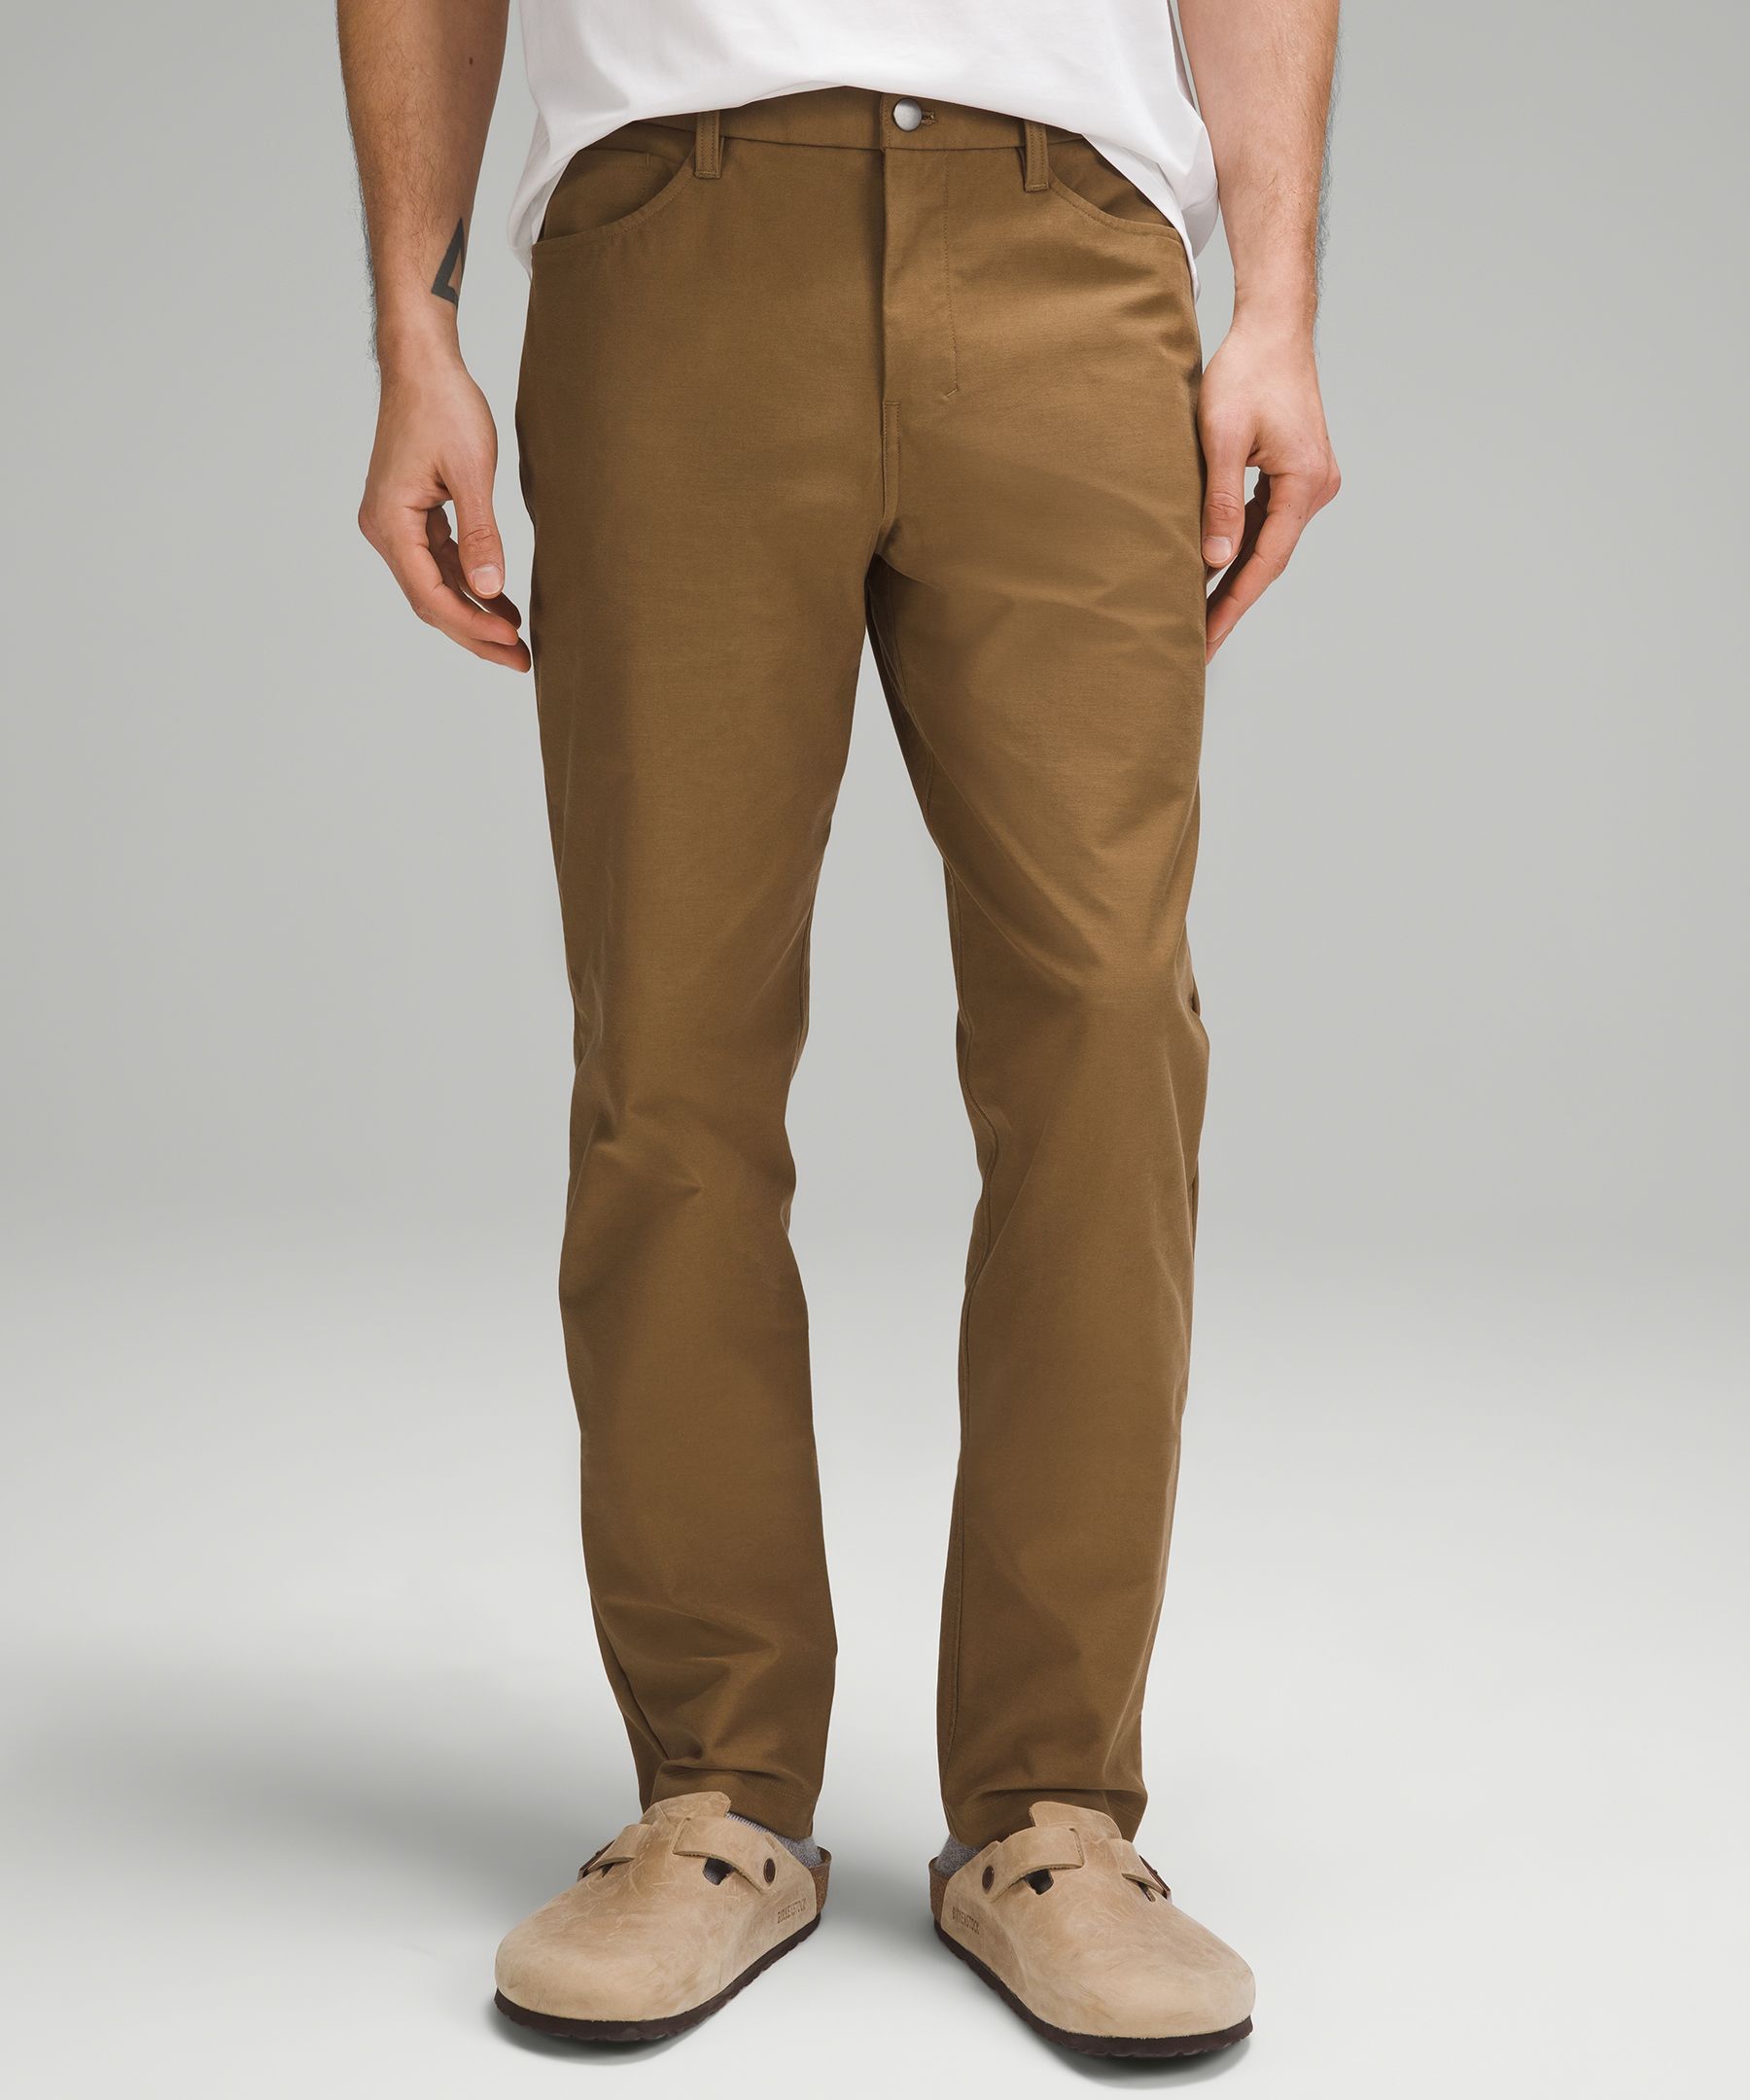 Lululemon athletica ABC Slim-Fit 5 Pocket Pant 32L *Utilitech, Men's  Trousers